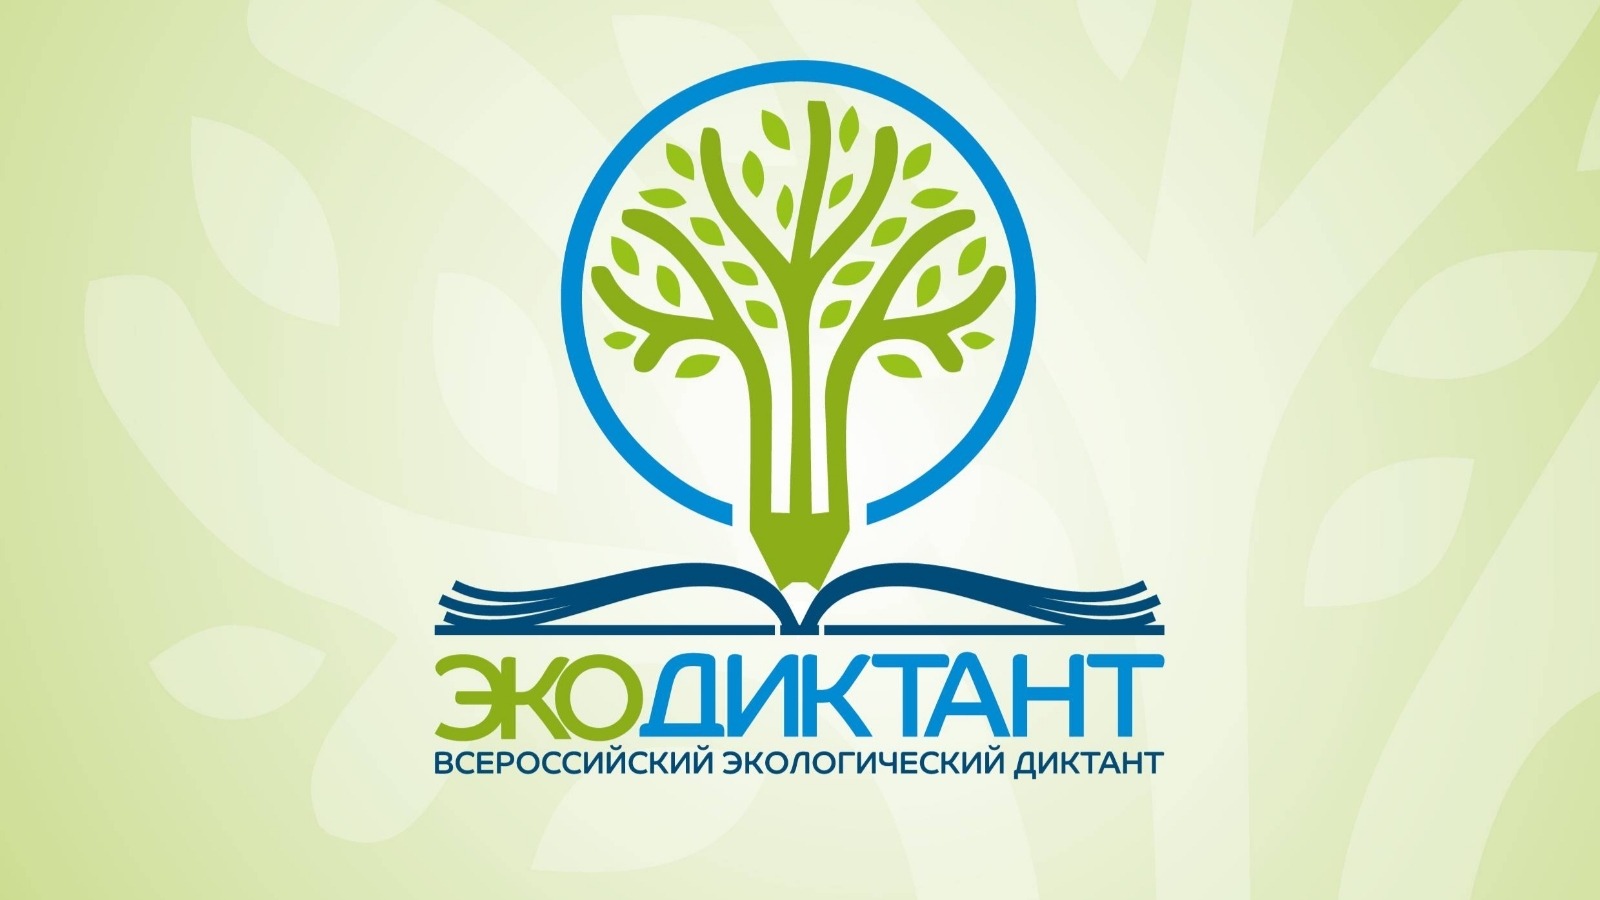 Тюменская область заняла 3 место во Всероссийском экологическом диктанте